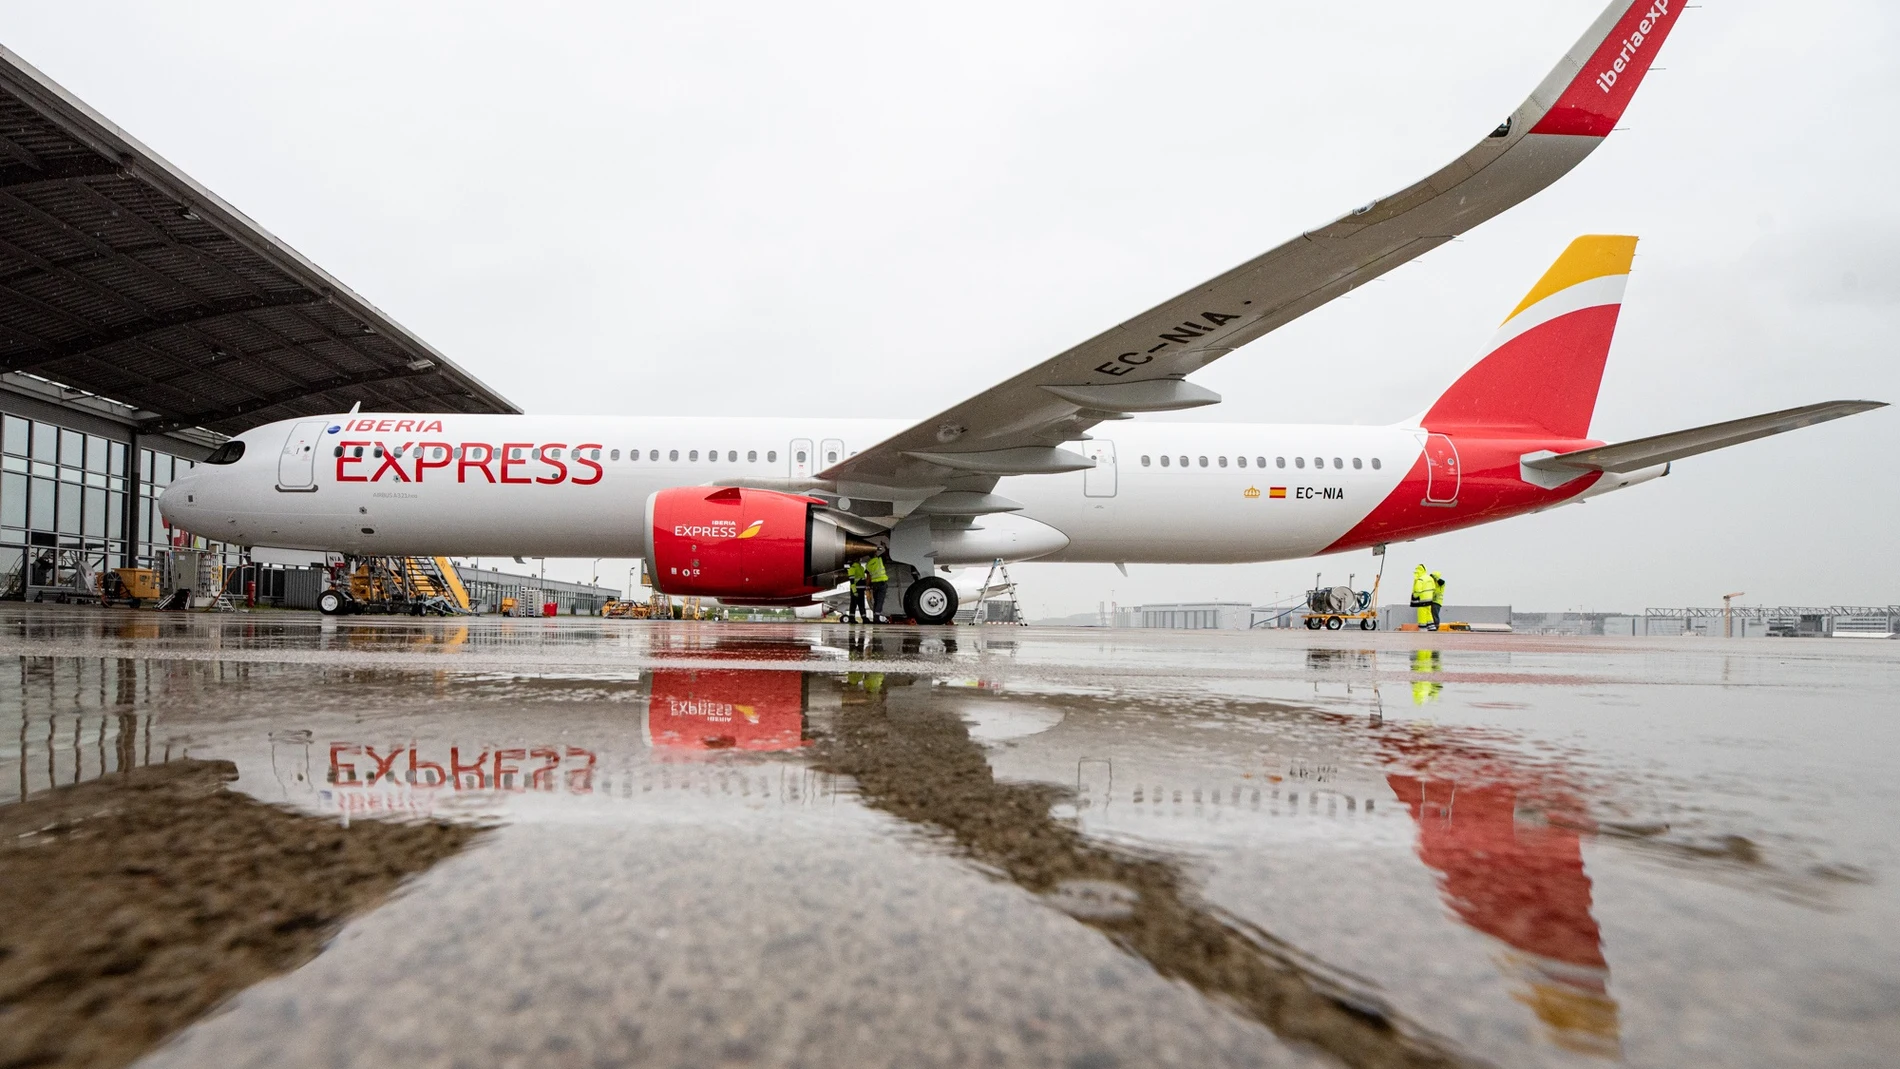 Iberia Express incorpora a su flota un segundo avión A321neo